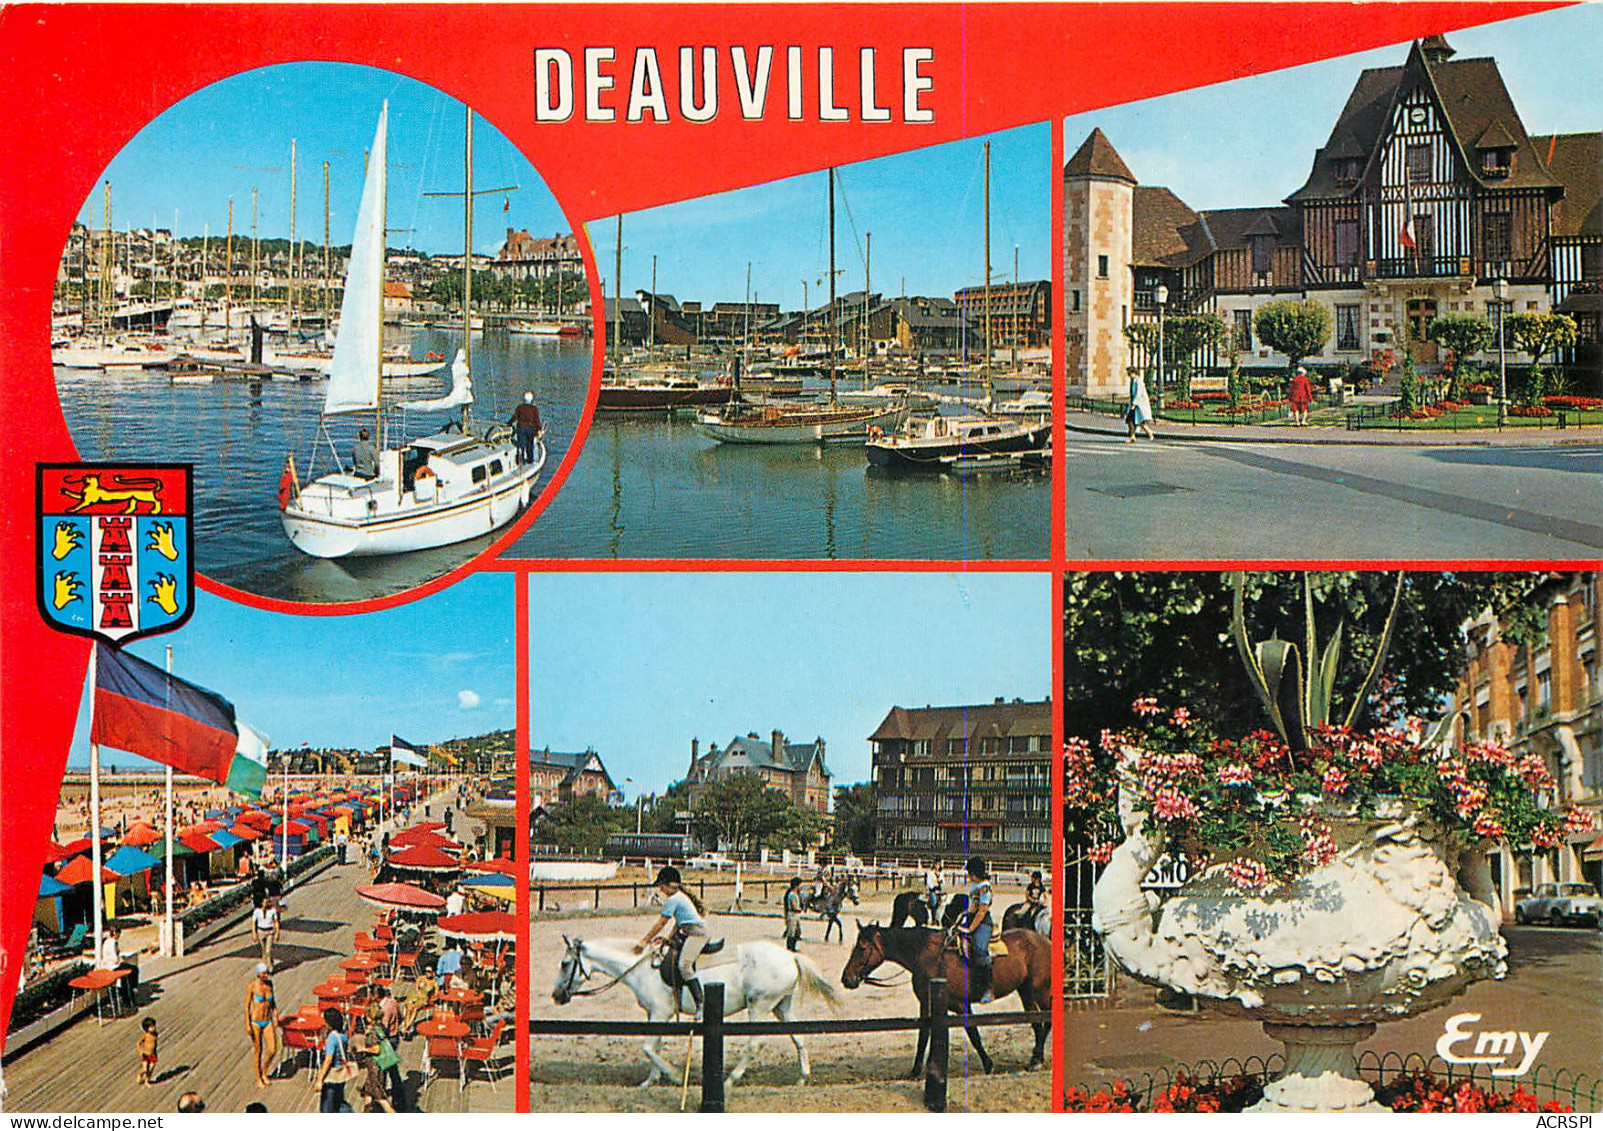 DEAUVILLE Port Port Deauville L Hotel De Ville Et De Tourisme Le Manege 14(scan Recto-verso) MB2389 - Deauville